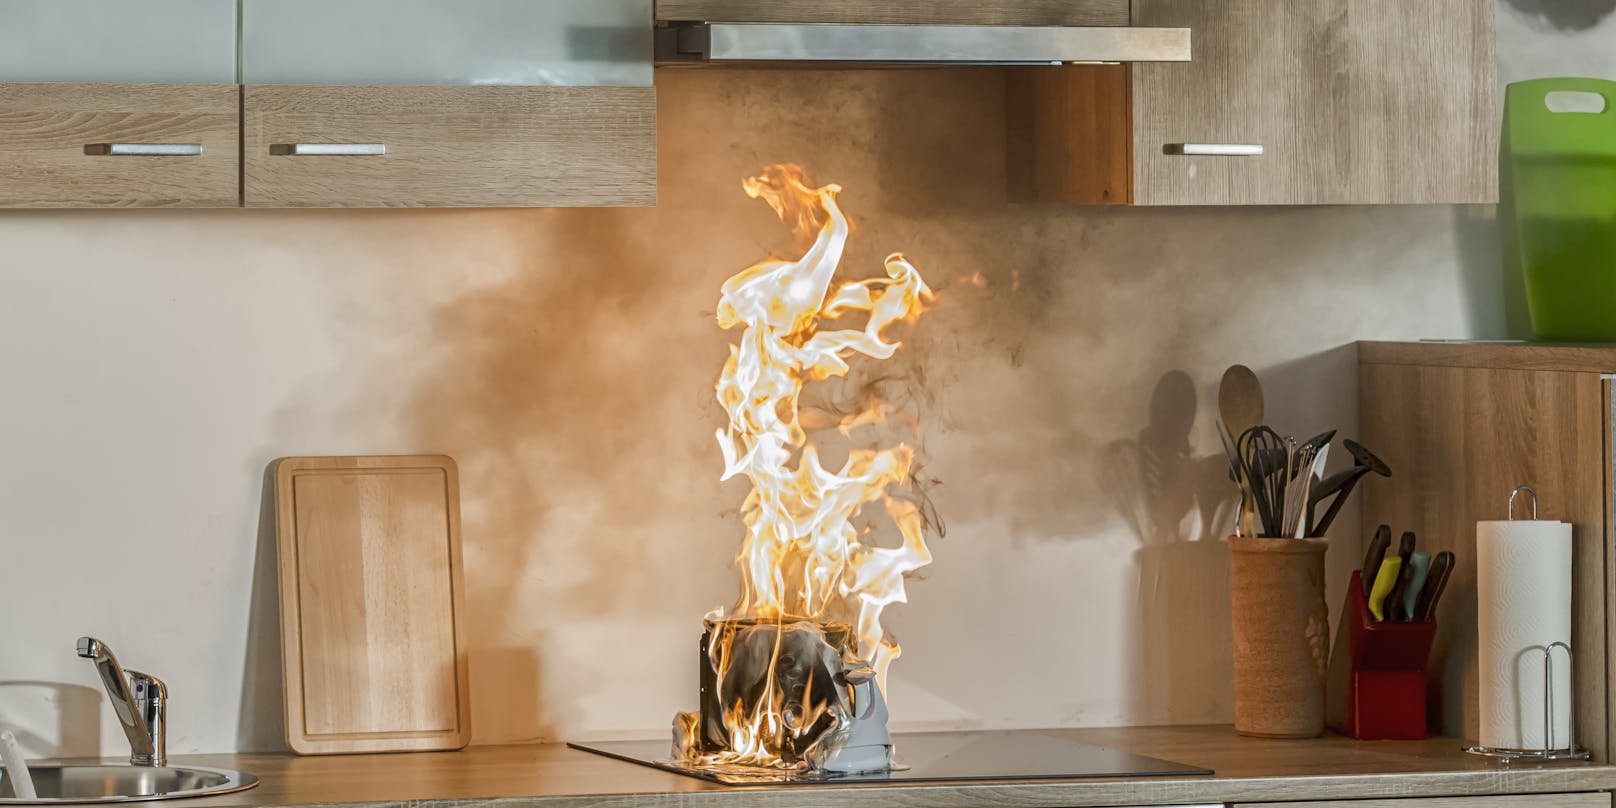 In der Küche begann es zu brennen. Symbolbild.